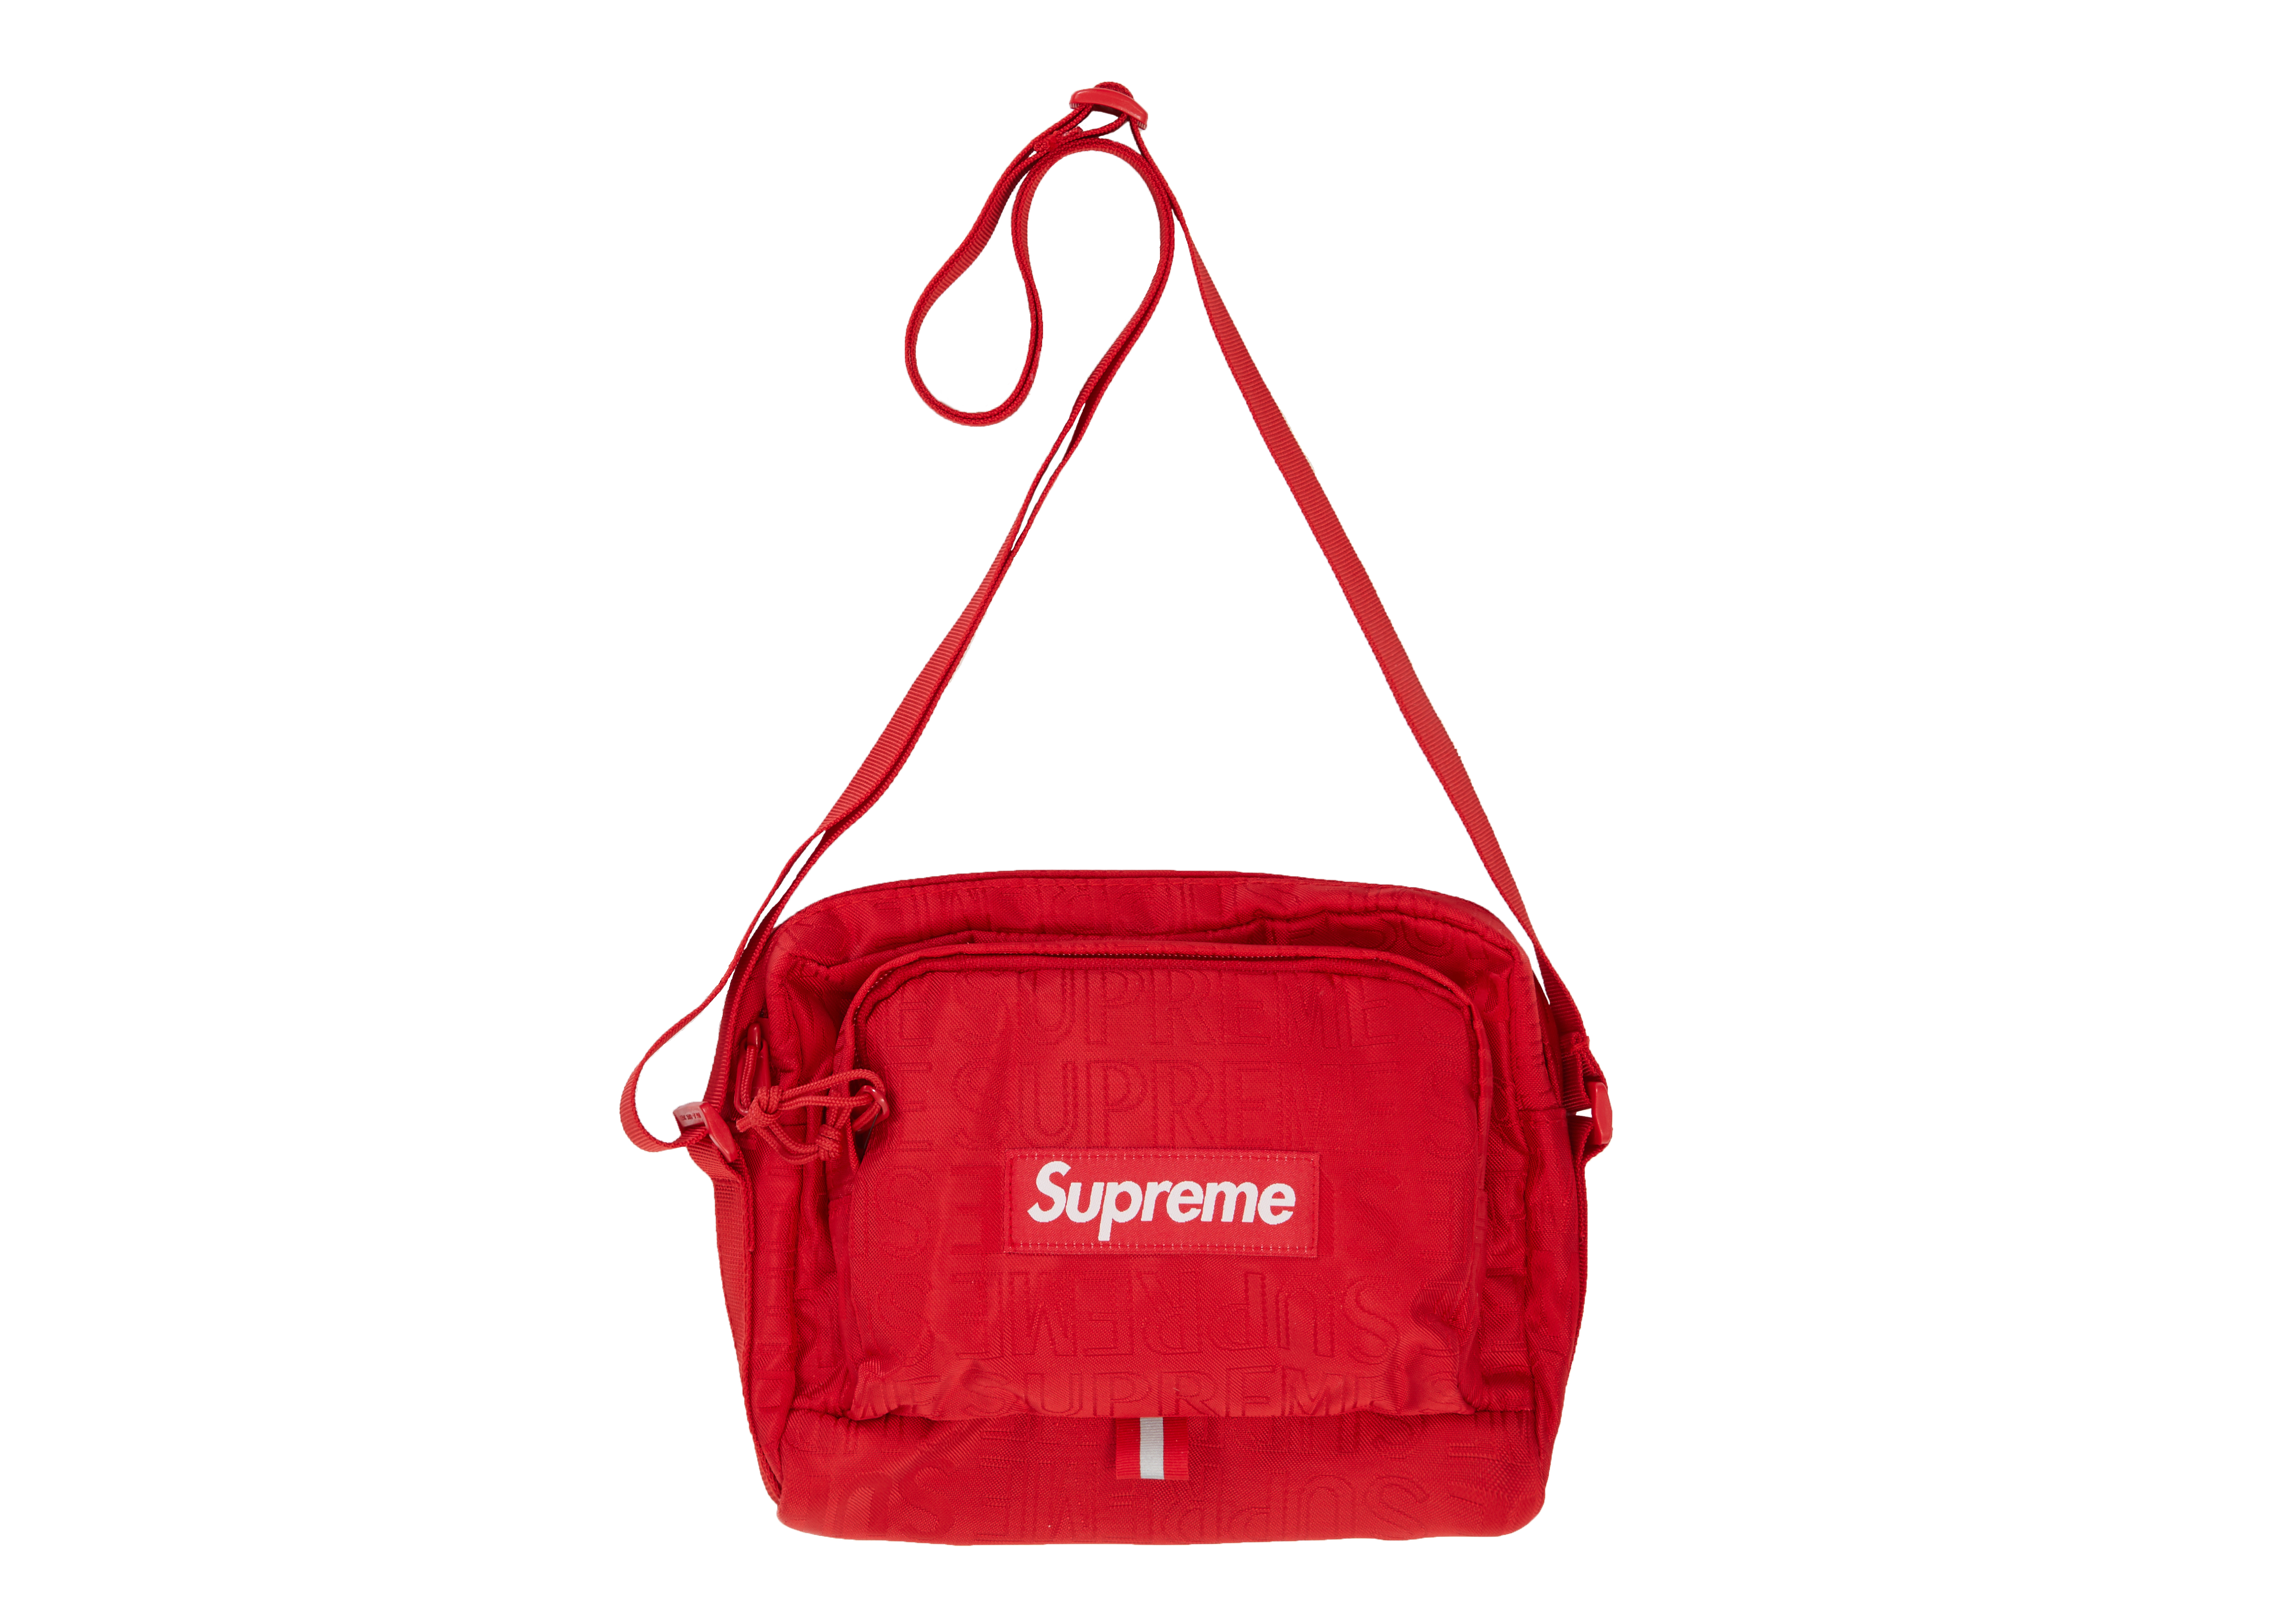 supreme shoulder bag 2019